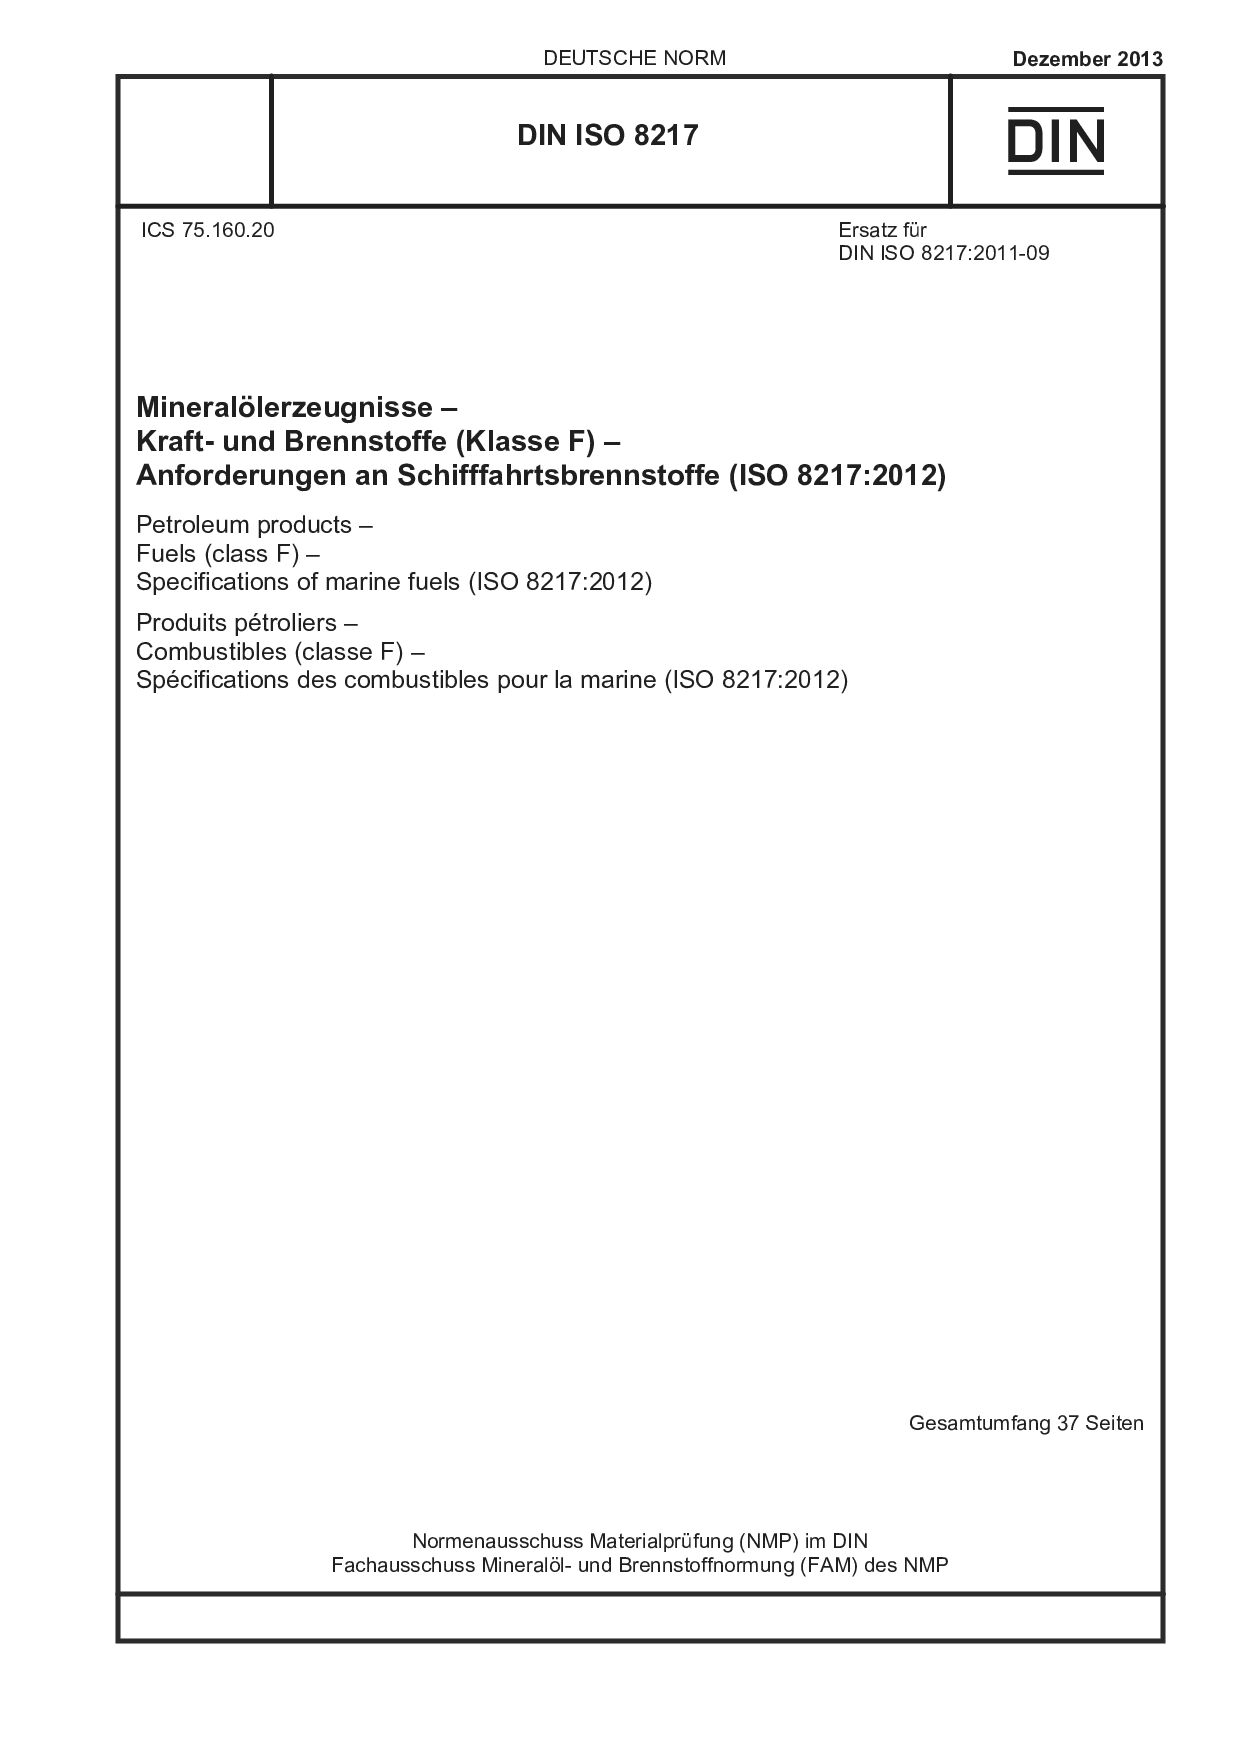 DIN ISO 8217:2013封面图